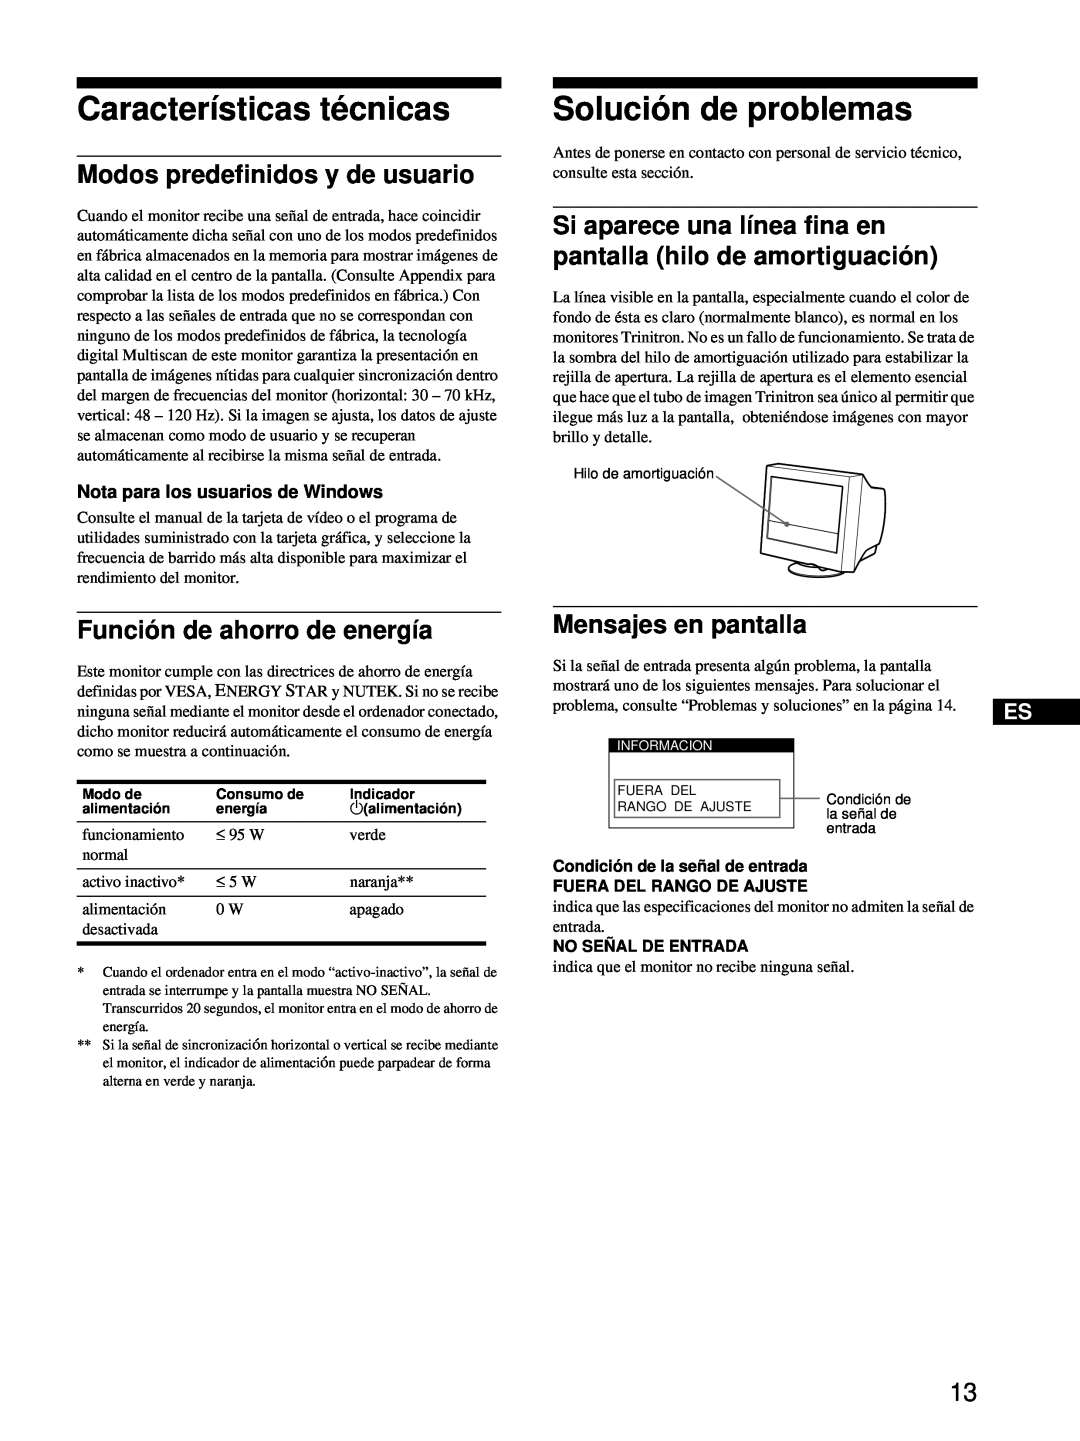 Sony CPD-E100 manual Características técnicas, Solución de problemas, Modos predefinidos y de usuario, Mensajes en pantalla 